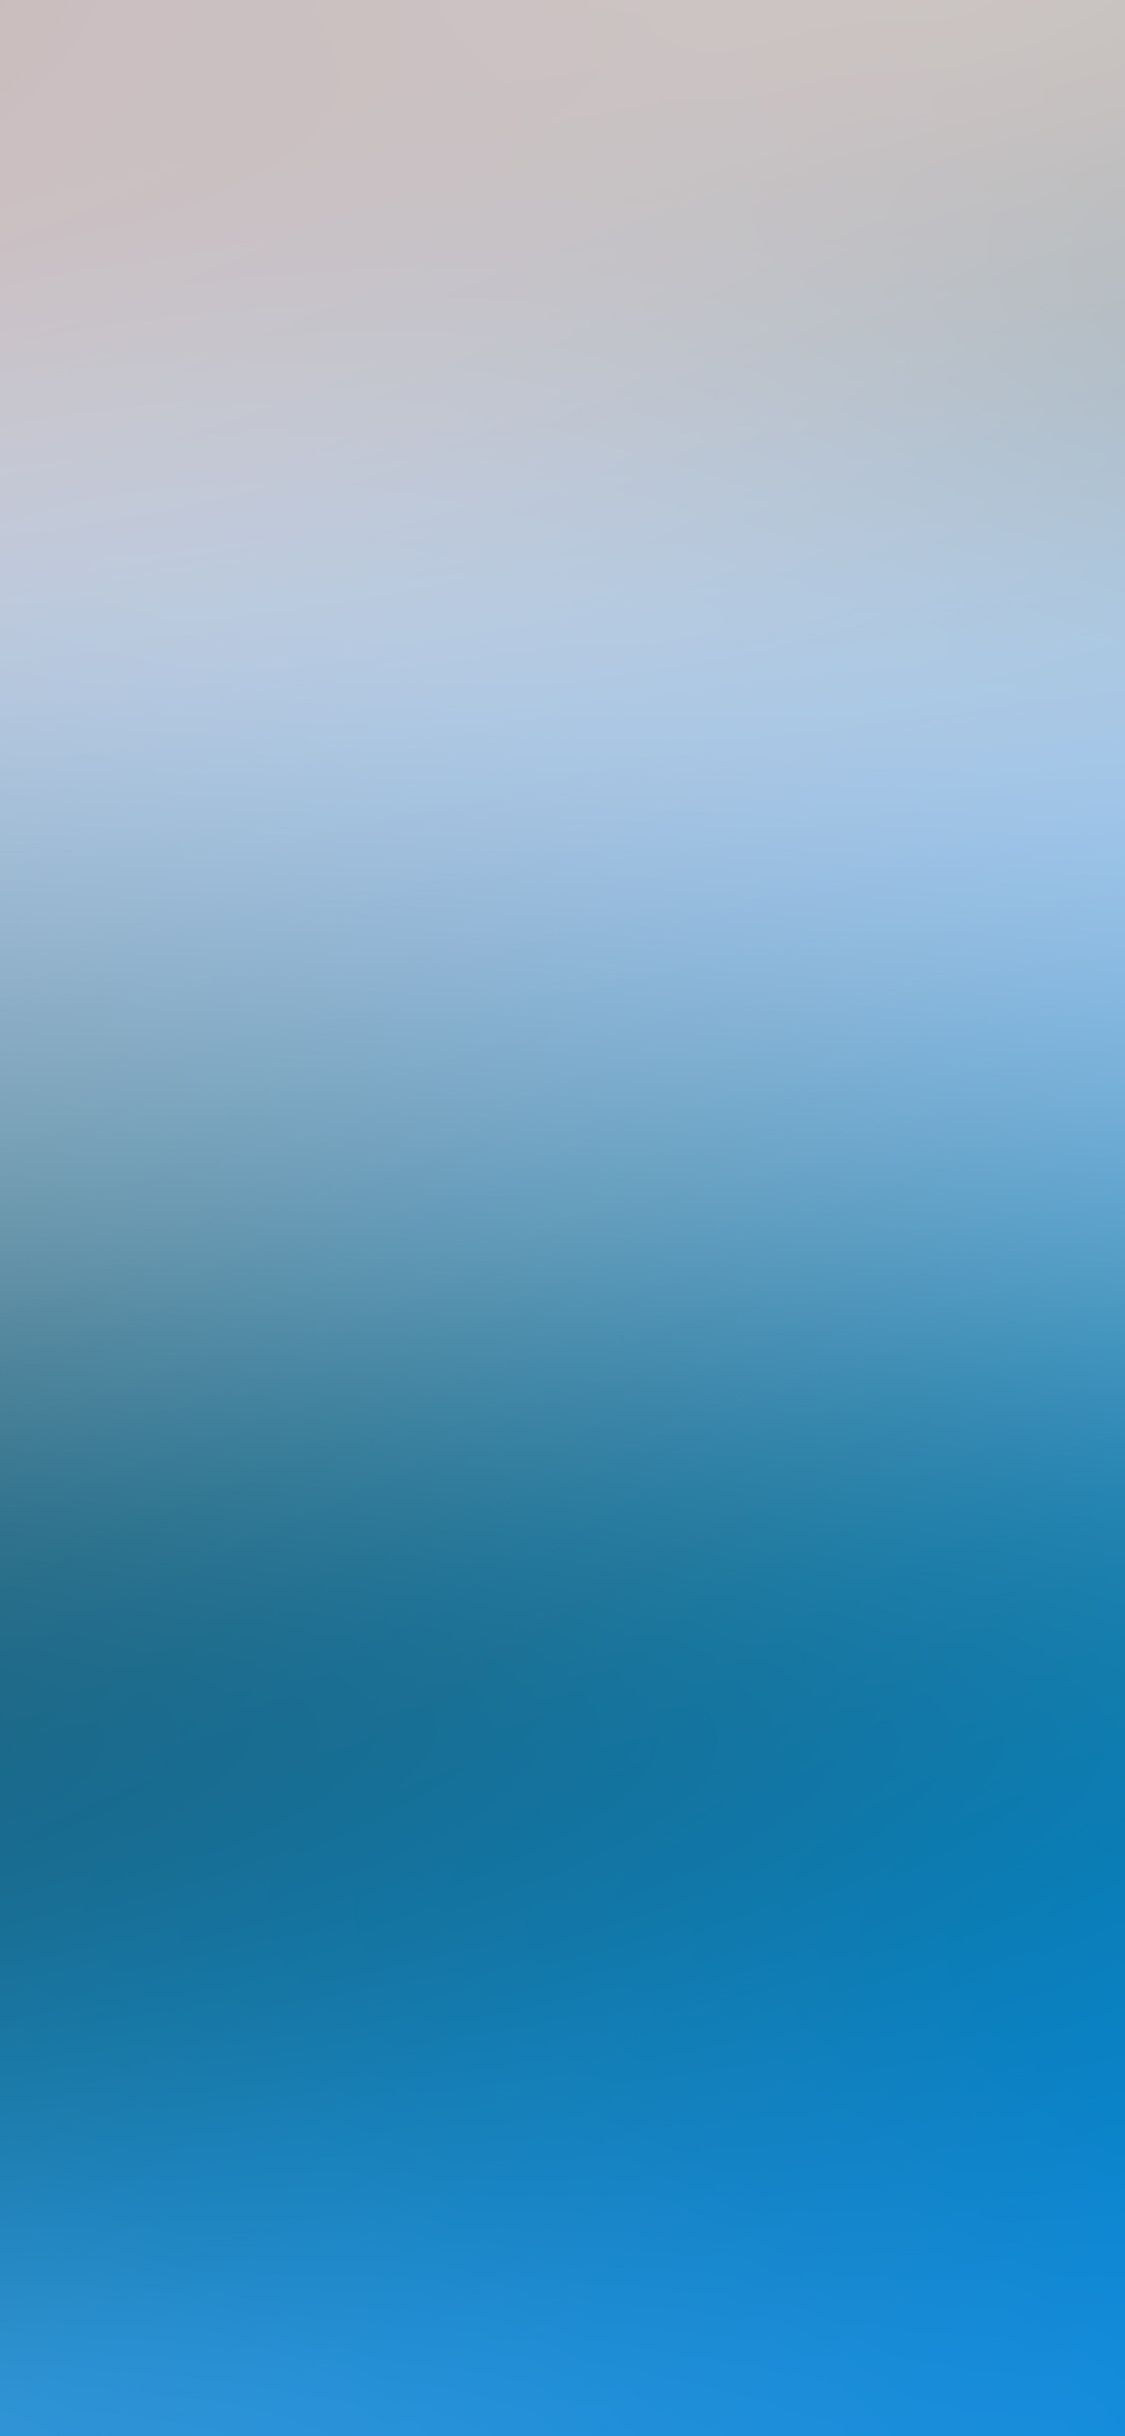 iPhone X wallpaper. soft blue gray gradation blur